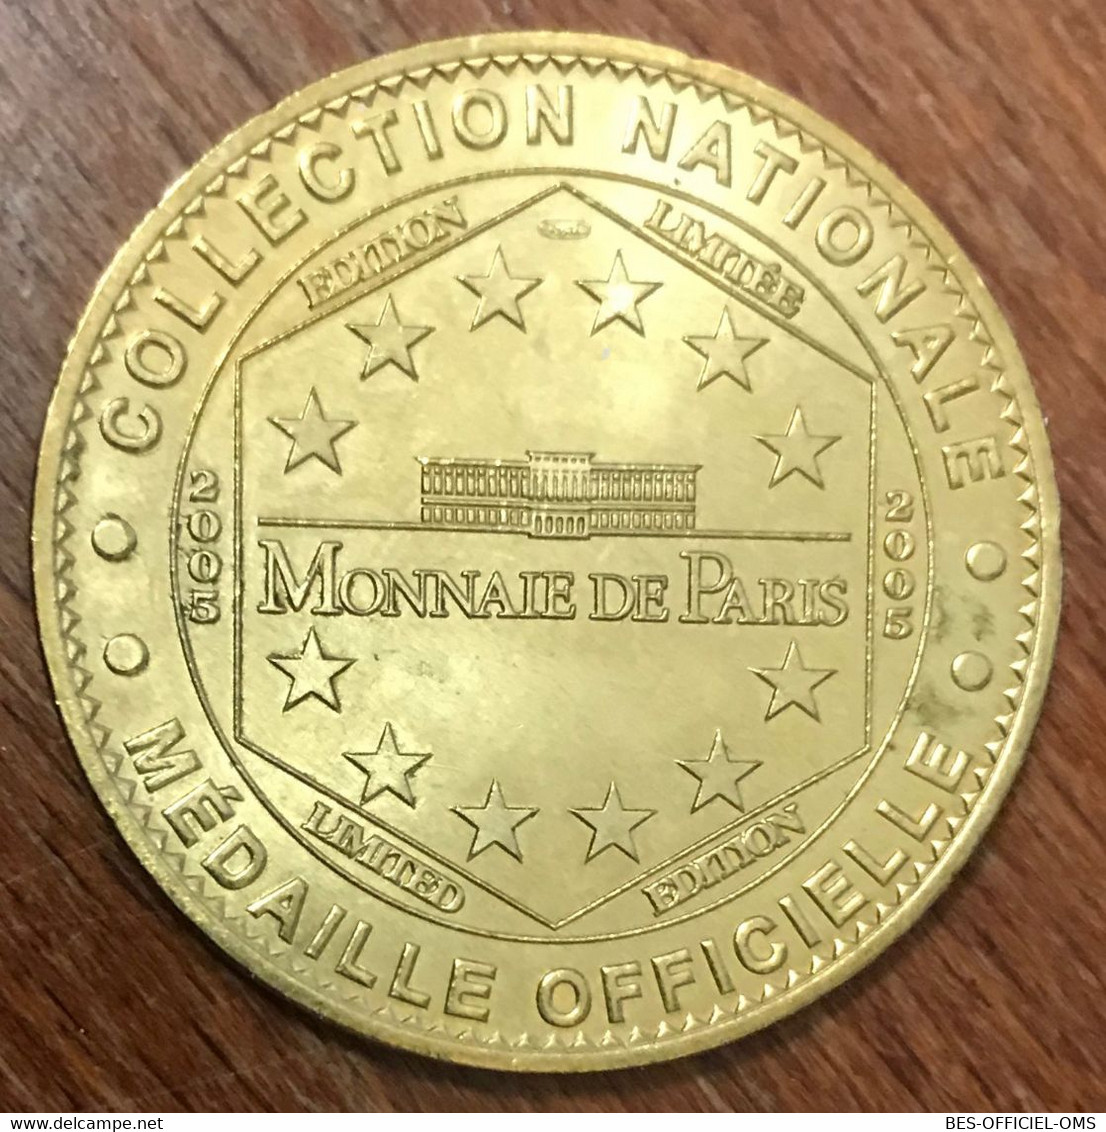 17 NOTRE-DAME DE ROYAN MDP 2005 MEDAILLE SOUVENIR MONNAIE DE PARIS JETON TOURISTIQUE MEDALS COINS TOKENS - 2005